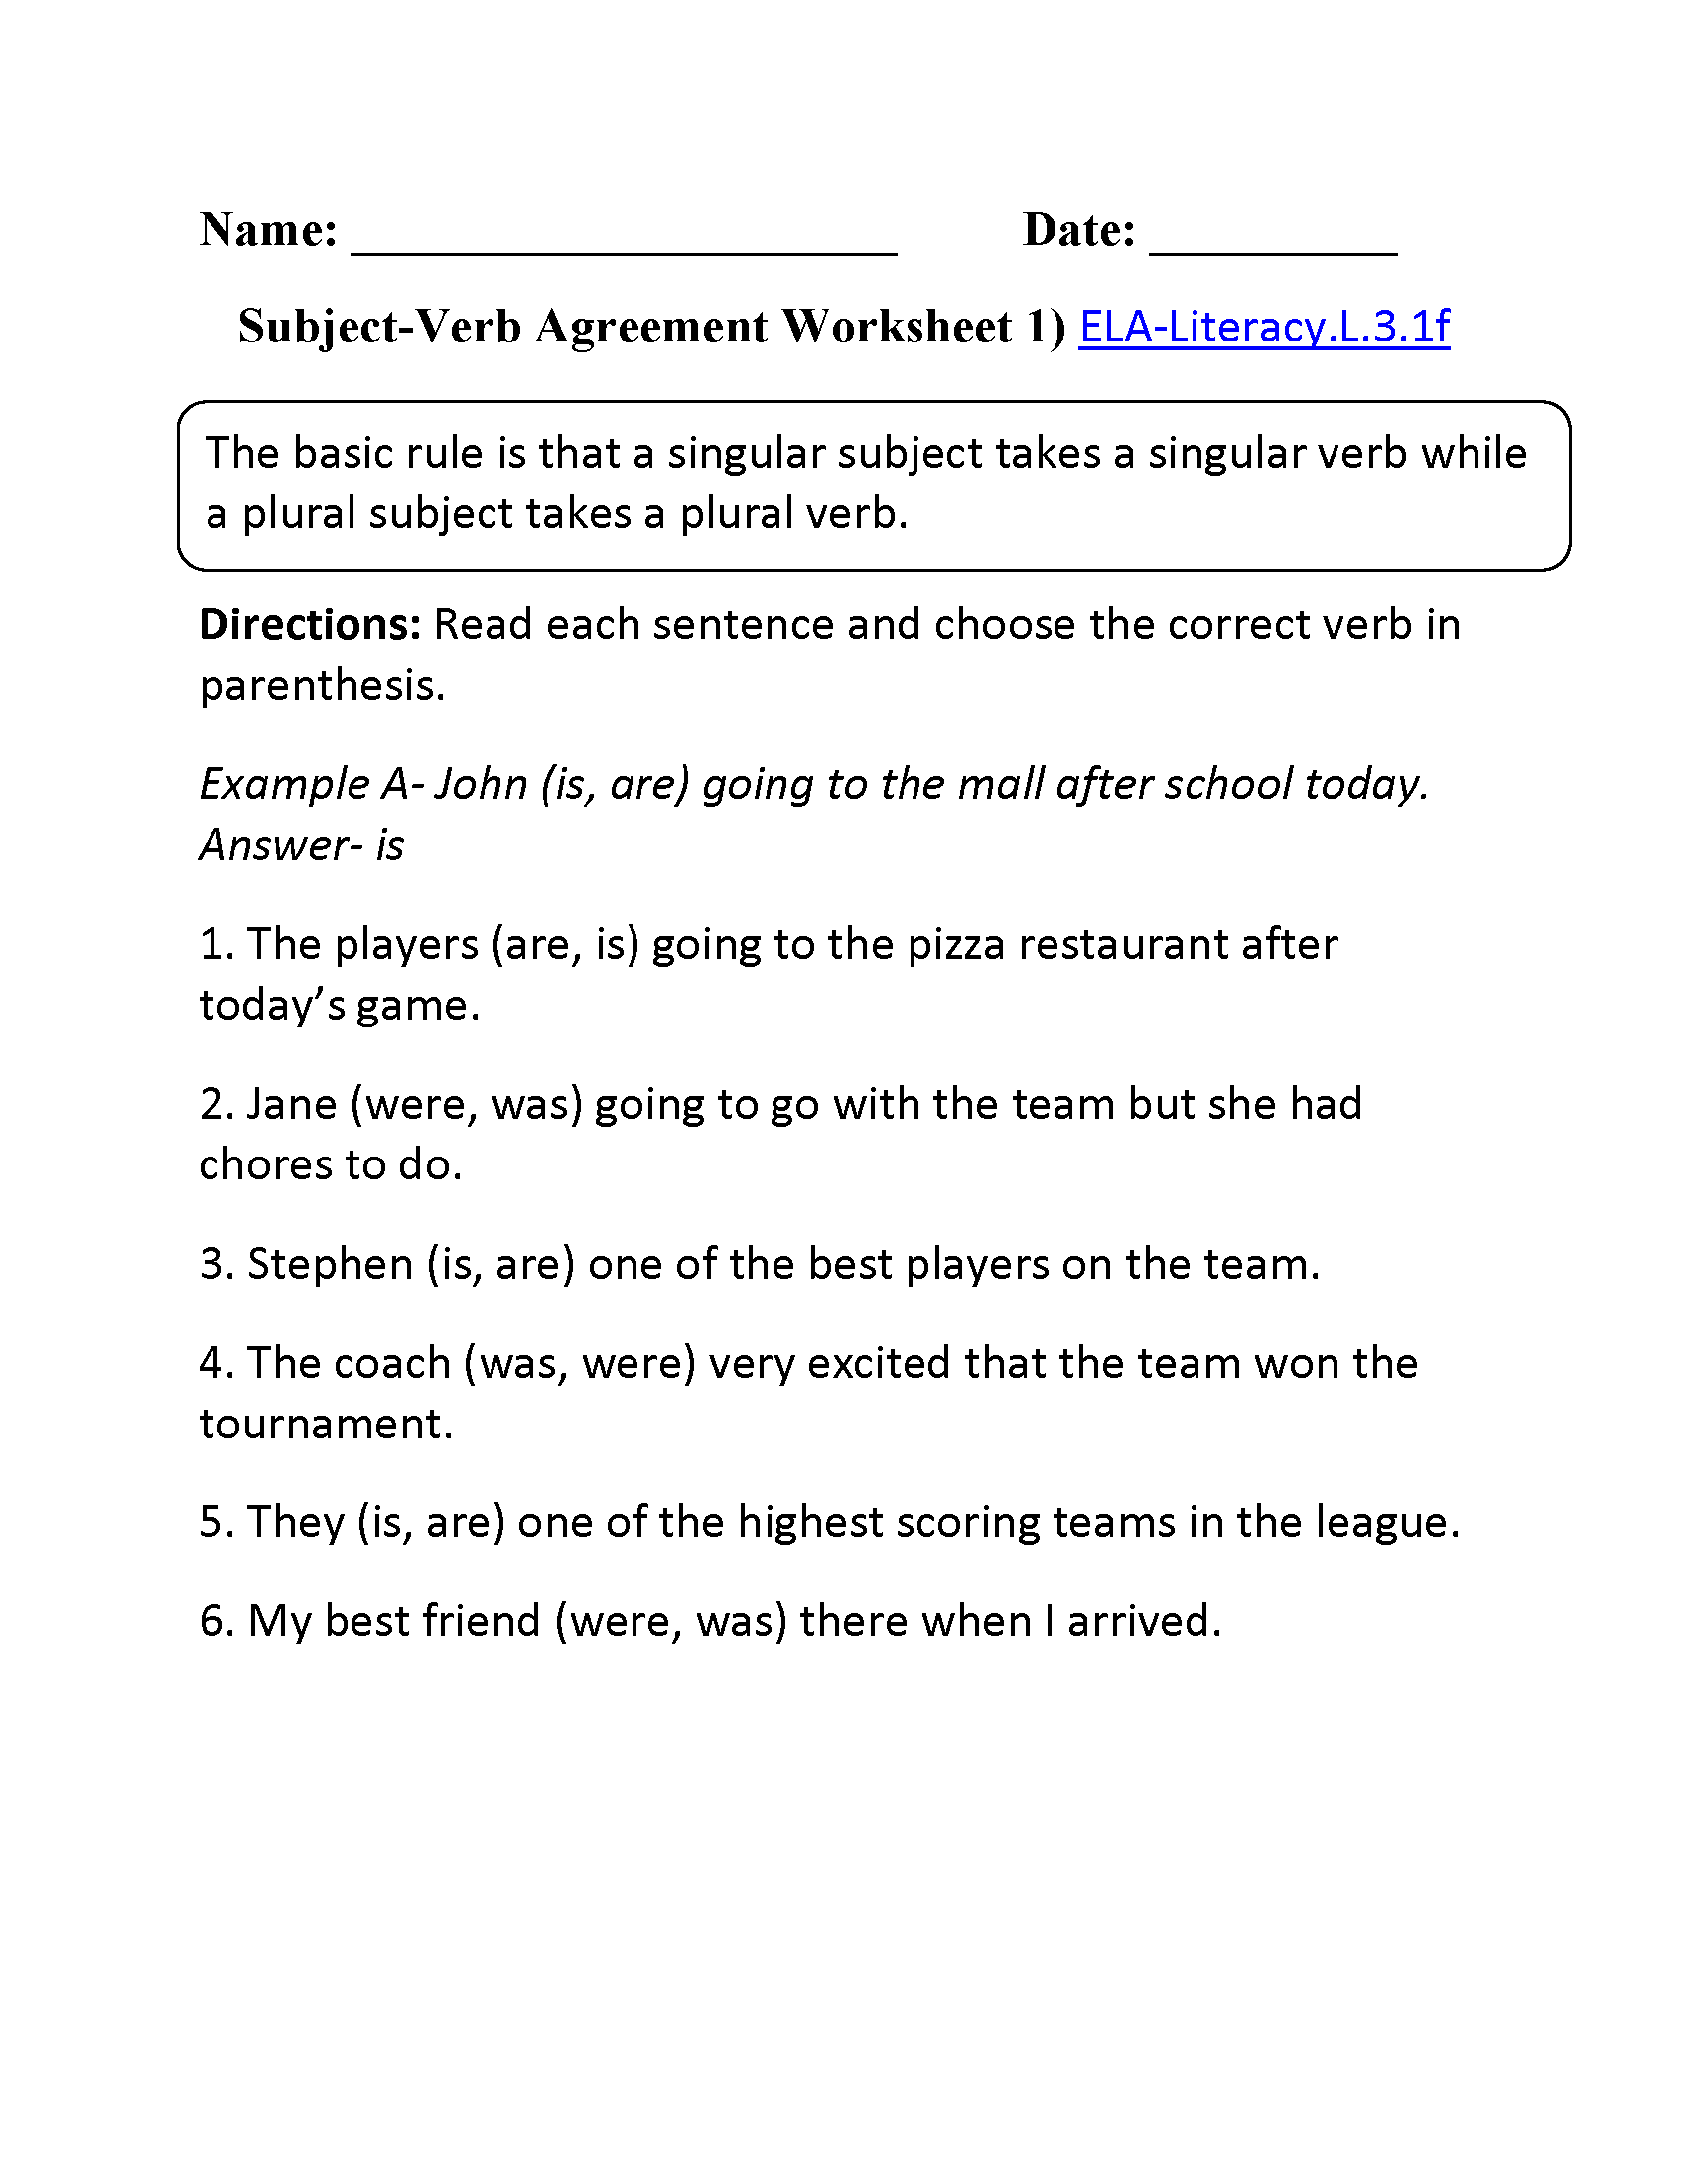 Subject-Verb Agreement Worksheet 1 ELA-Literacy.L.3.1f Language Worksheet